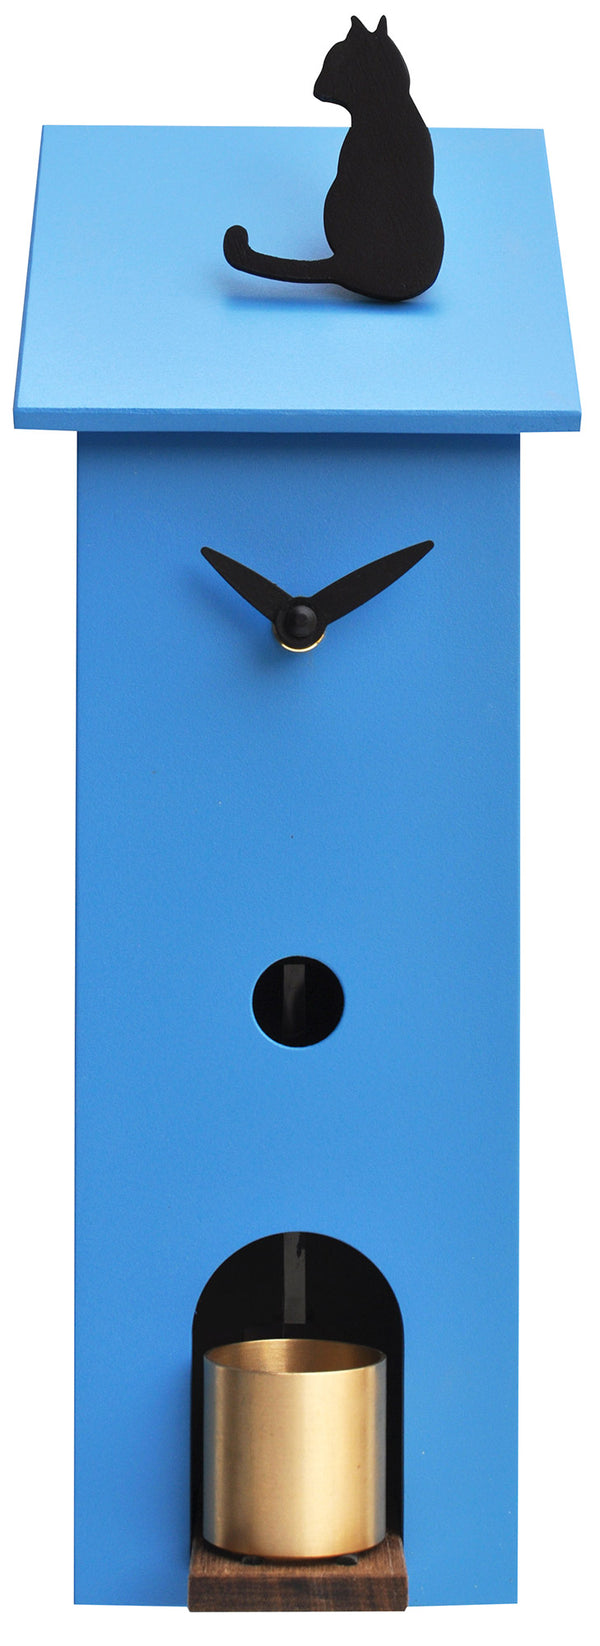 acquista Horloge Murale 13x37x11cm Pirondini Italia Solitaire Bleu Clair